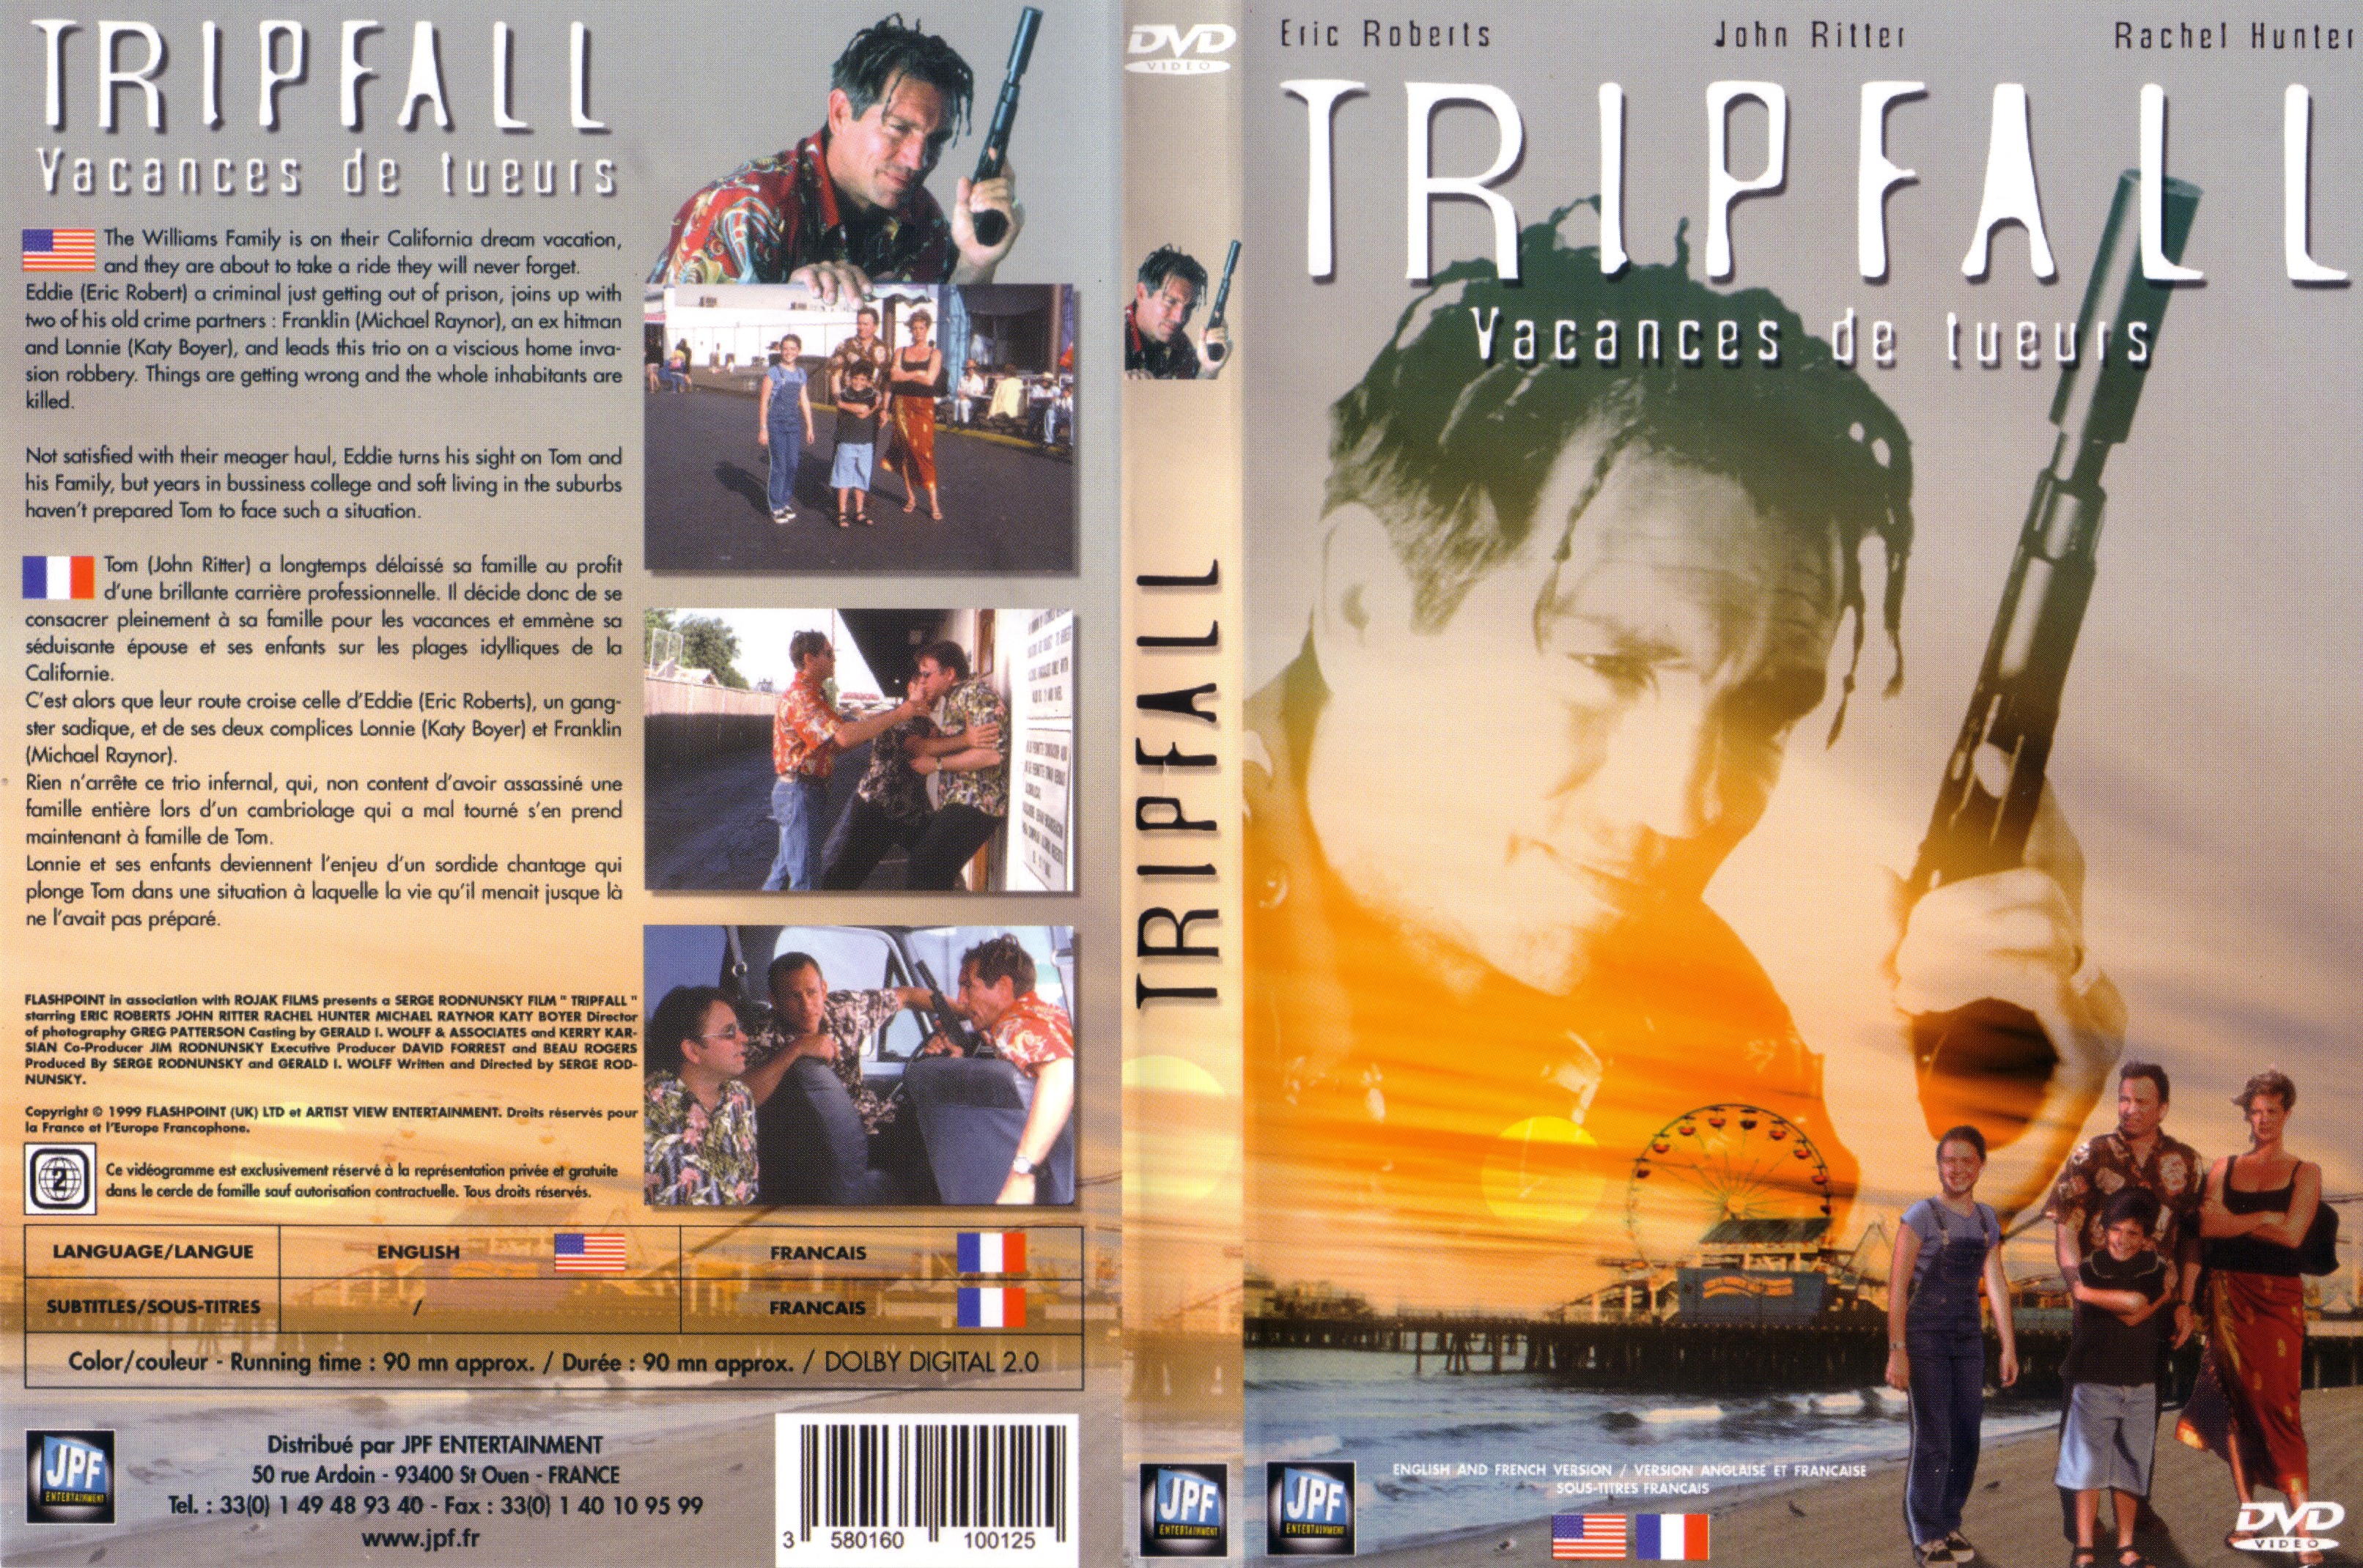 Jaquette DVD Tripfall